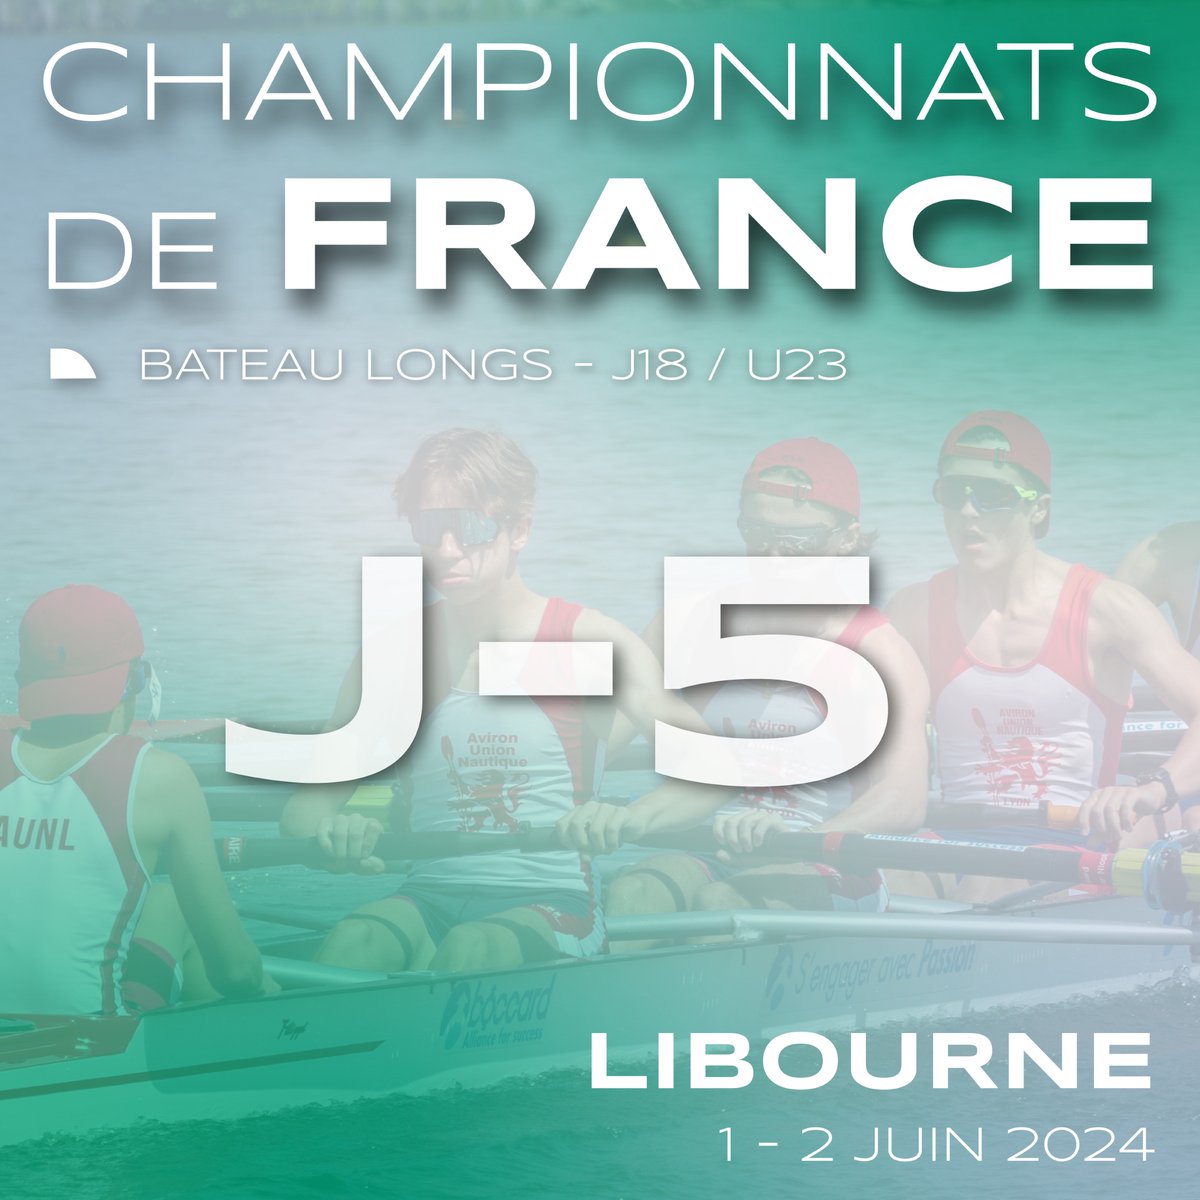 Nous sommes désormais à 5 jours du début des championnats de France J18 et U23 ⌛️

Découvrez les startlists des séries ➡️ ffaviron.regatta.time-team.fr/cdfbl/2024
----
@MAIF @CNR_Officiel @ville_libourne 
#championnatsdefrance #aviron #avironfrance